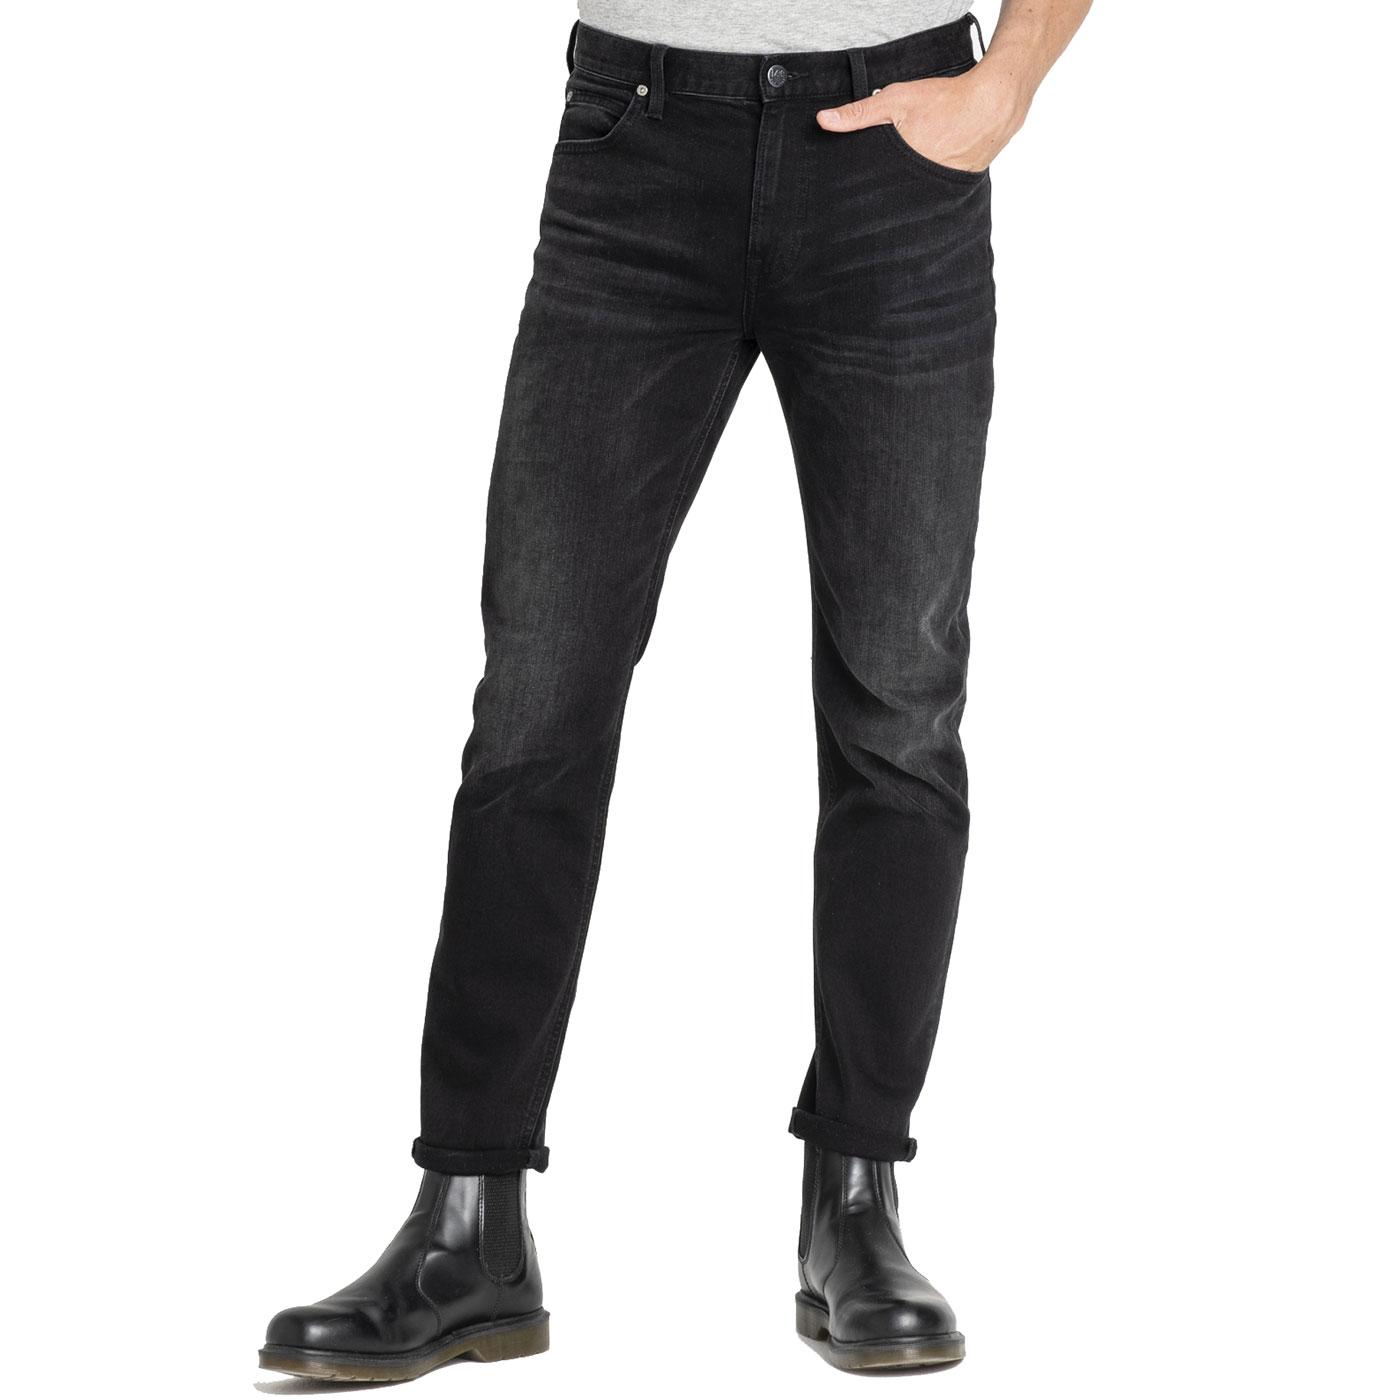 LEE JEANS Austin Retro Indie Jeans in Moto Black